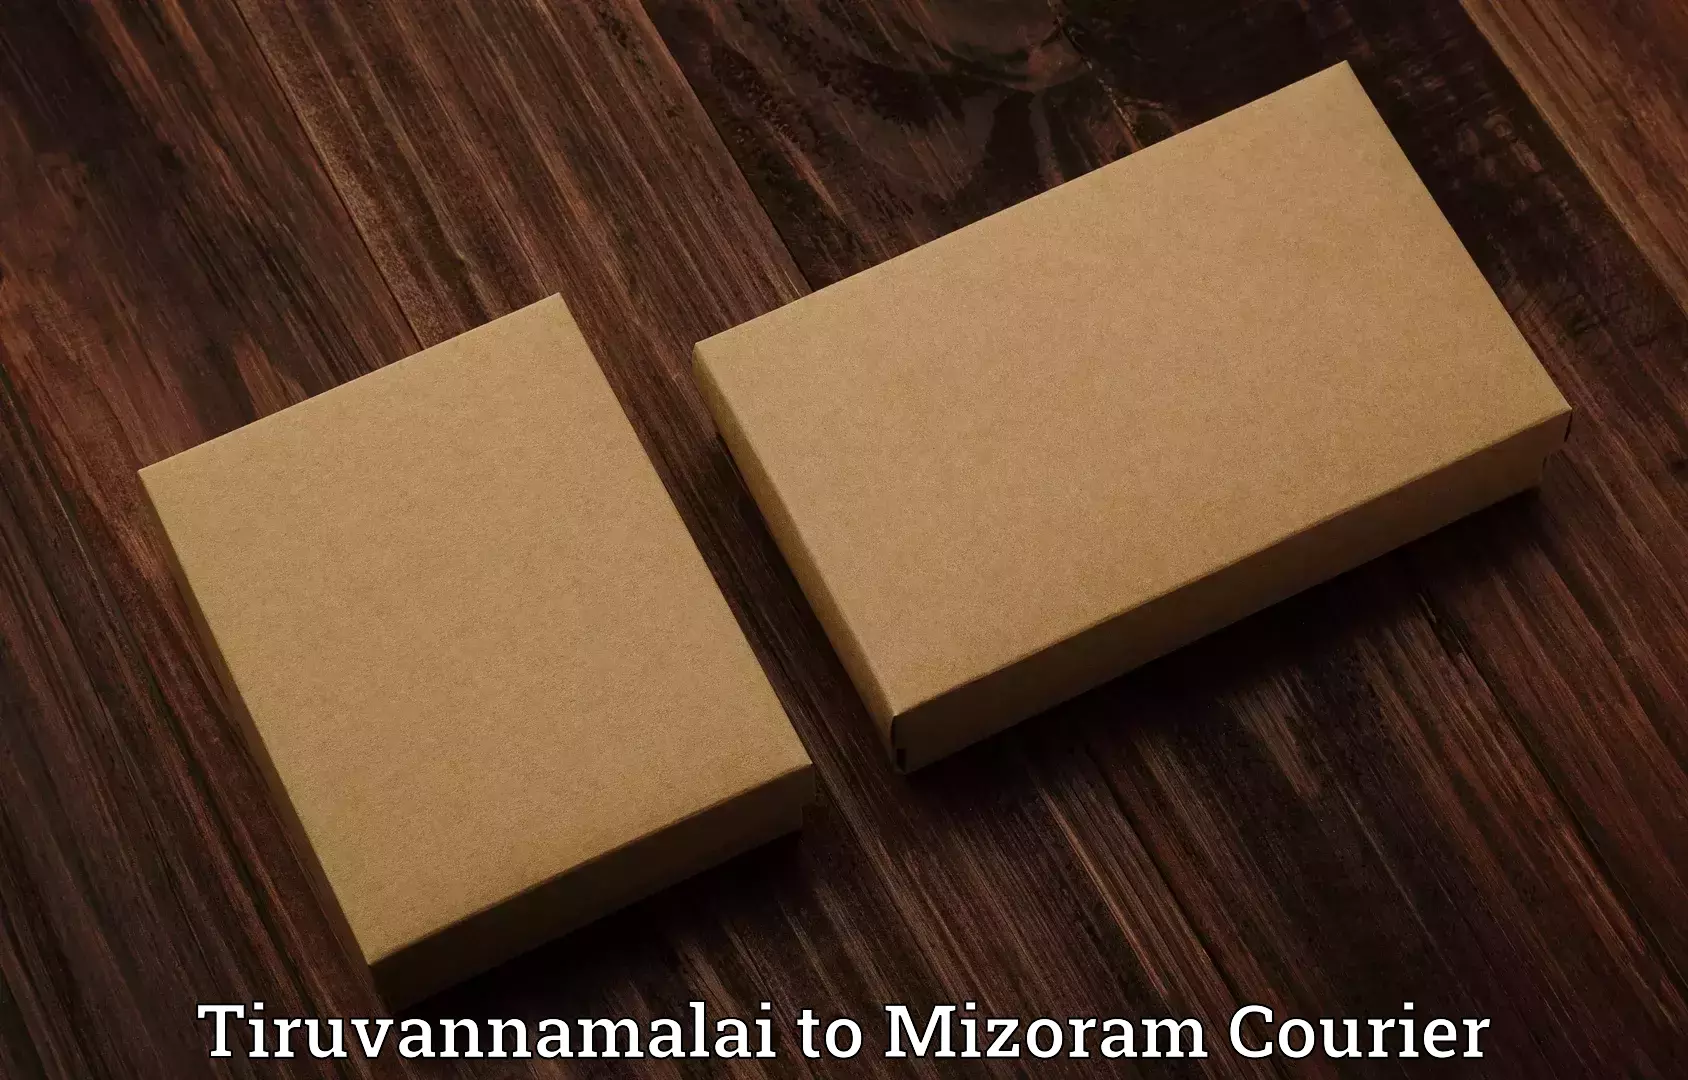 Personal effects shipping Tiruvannamalai to Saitual